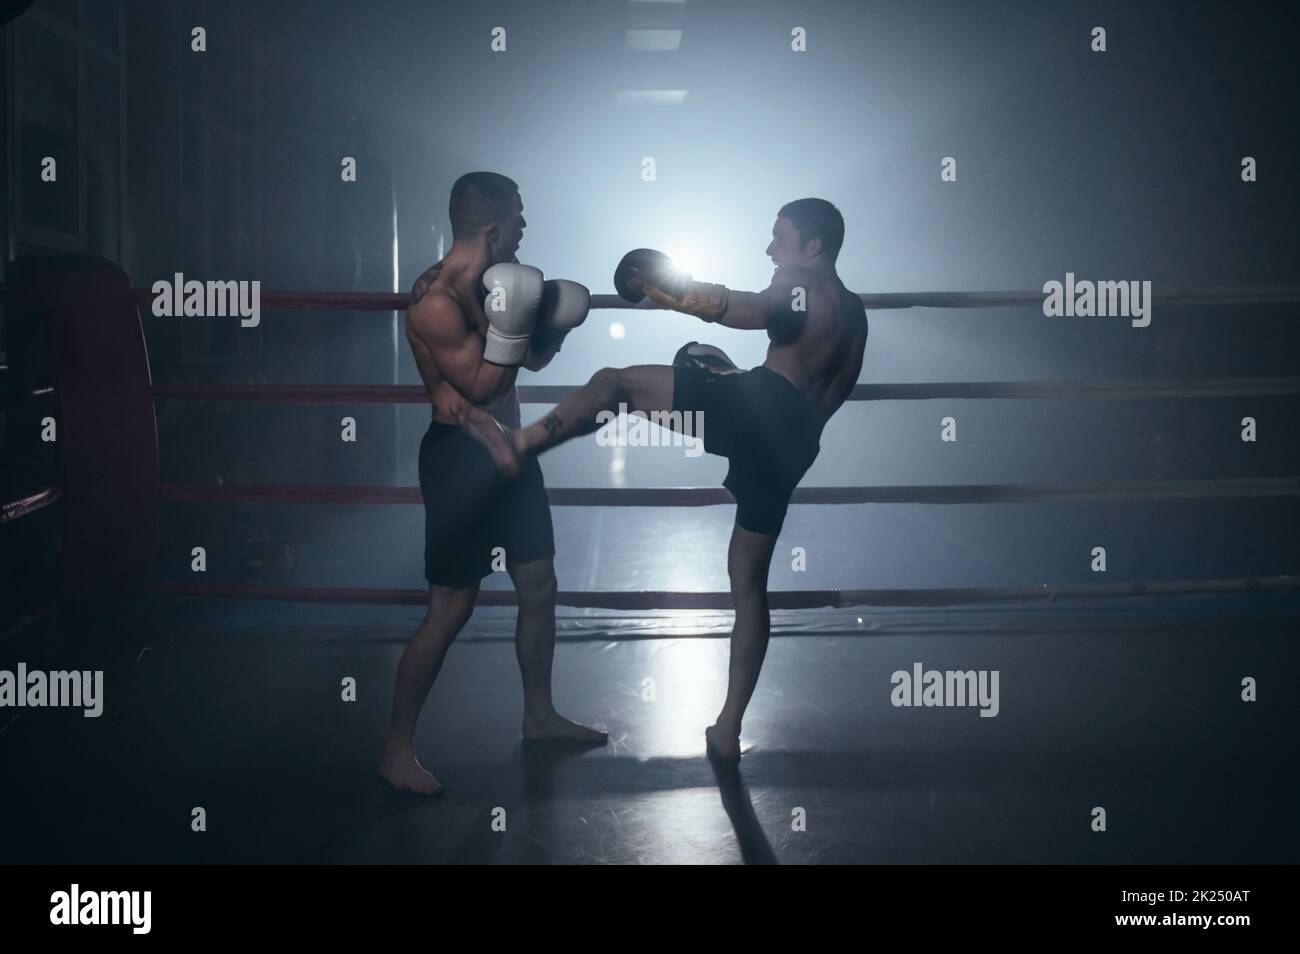 Zwei shirtless muskulösen Mann kämpfen Kick Boxkampf im Boxring. Hochwertige Fotos Stockfoto